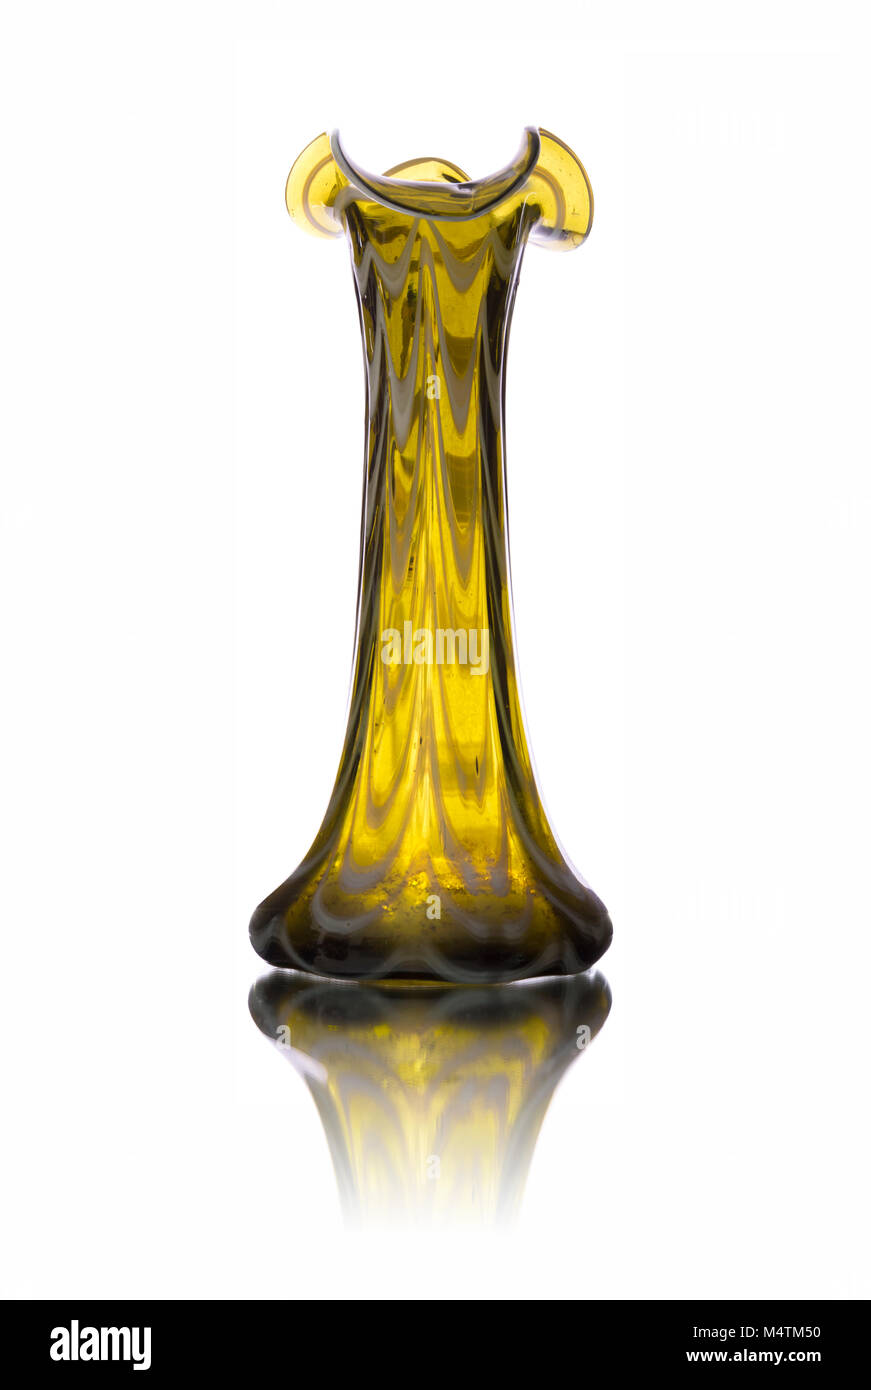 Antique yellow glass vase isolated on white backround Stock Photo